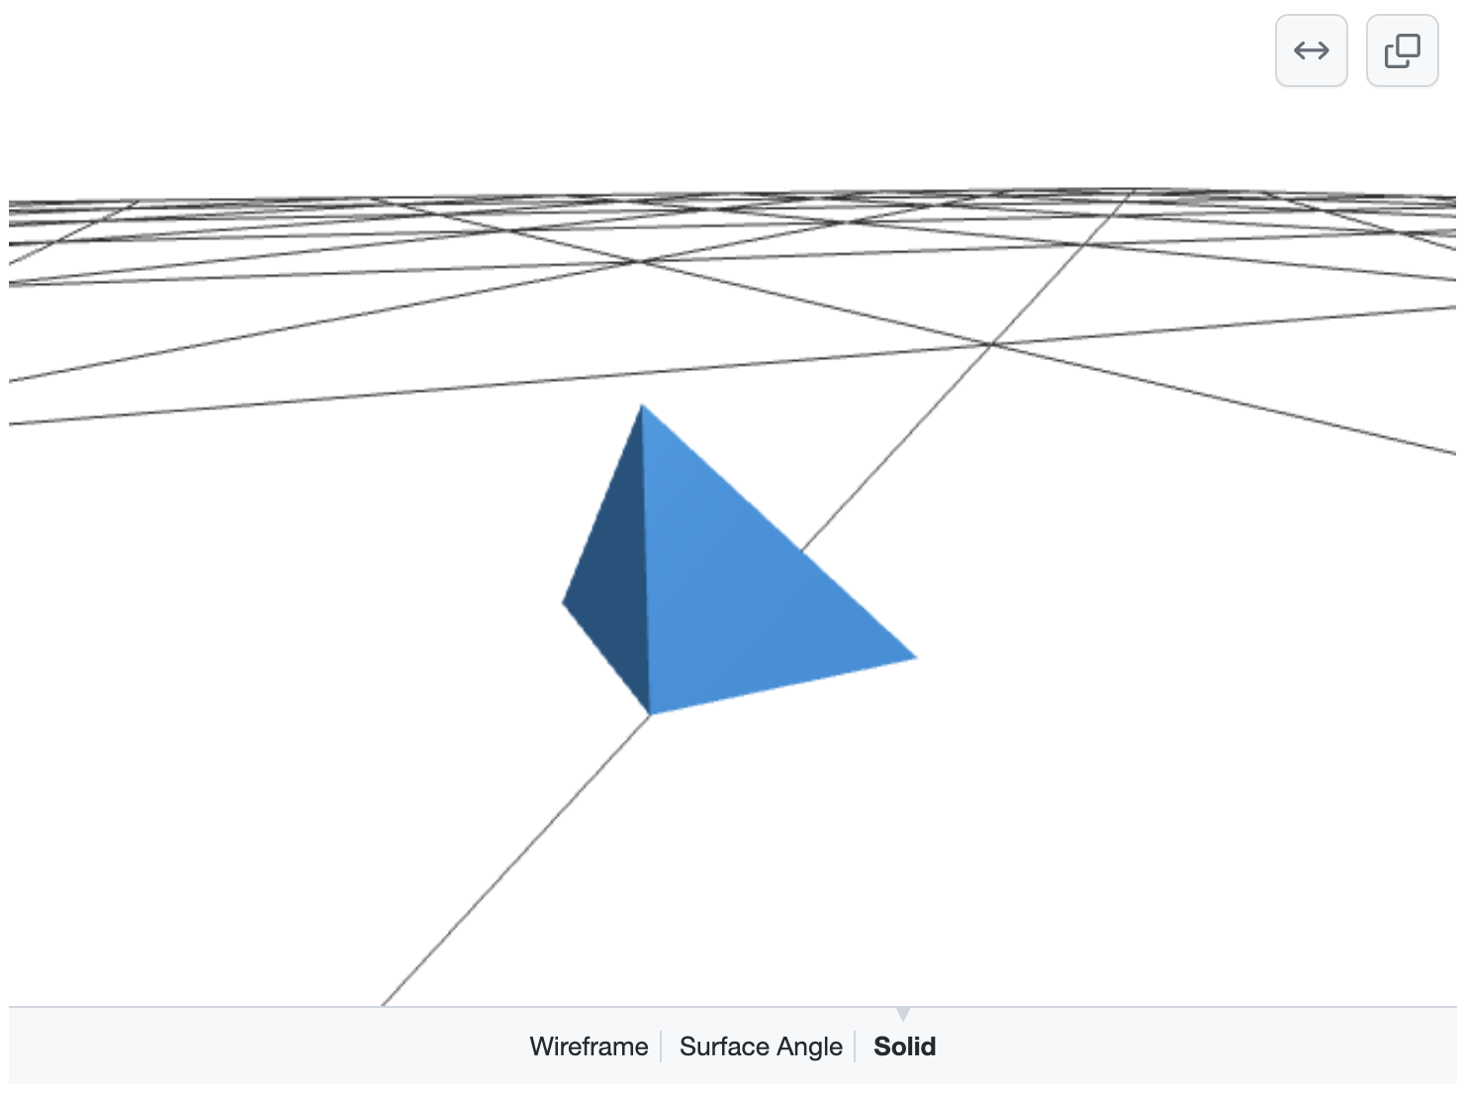 Screenshot eines 3D-Modells mit einer blauen Pyramide auf einem Raster aus schwarzen Linien auf weißem Grund. Unten werden Optionen zum Auswählen von „Wireframe“, „Surface Angle“ oder „Solid“ angezeigt.